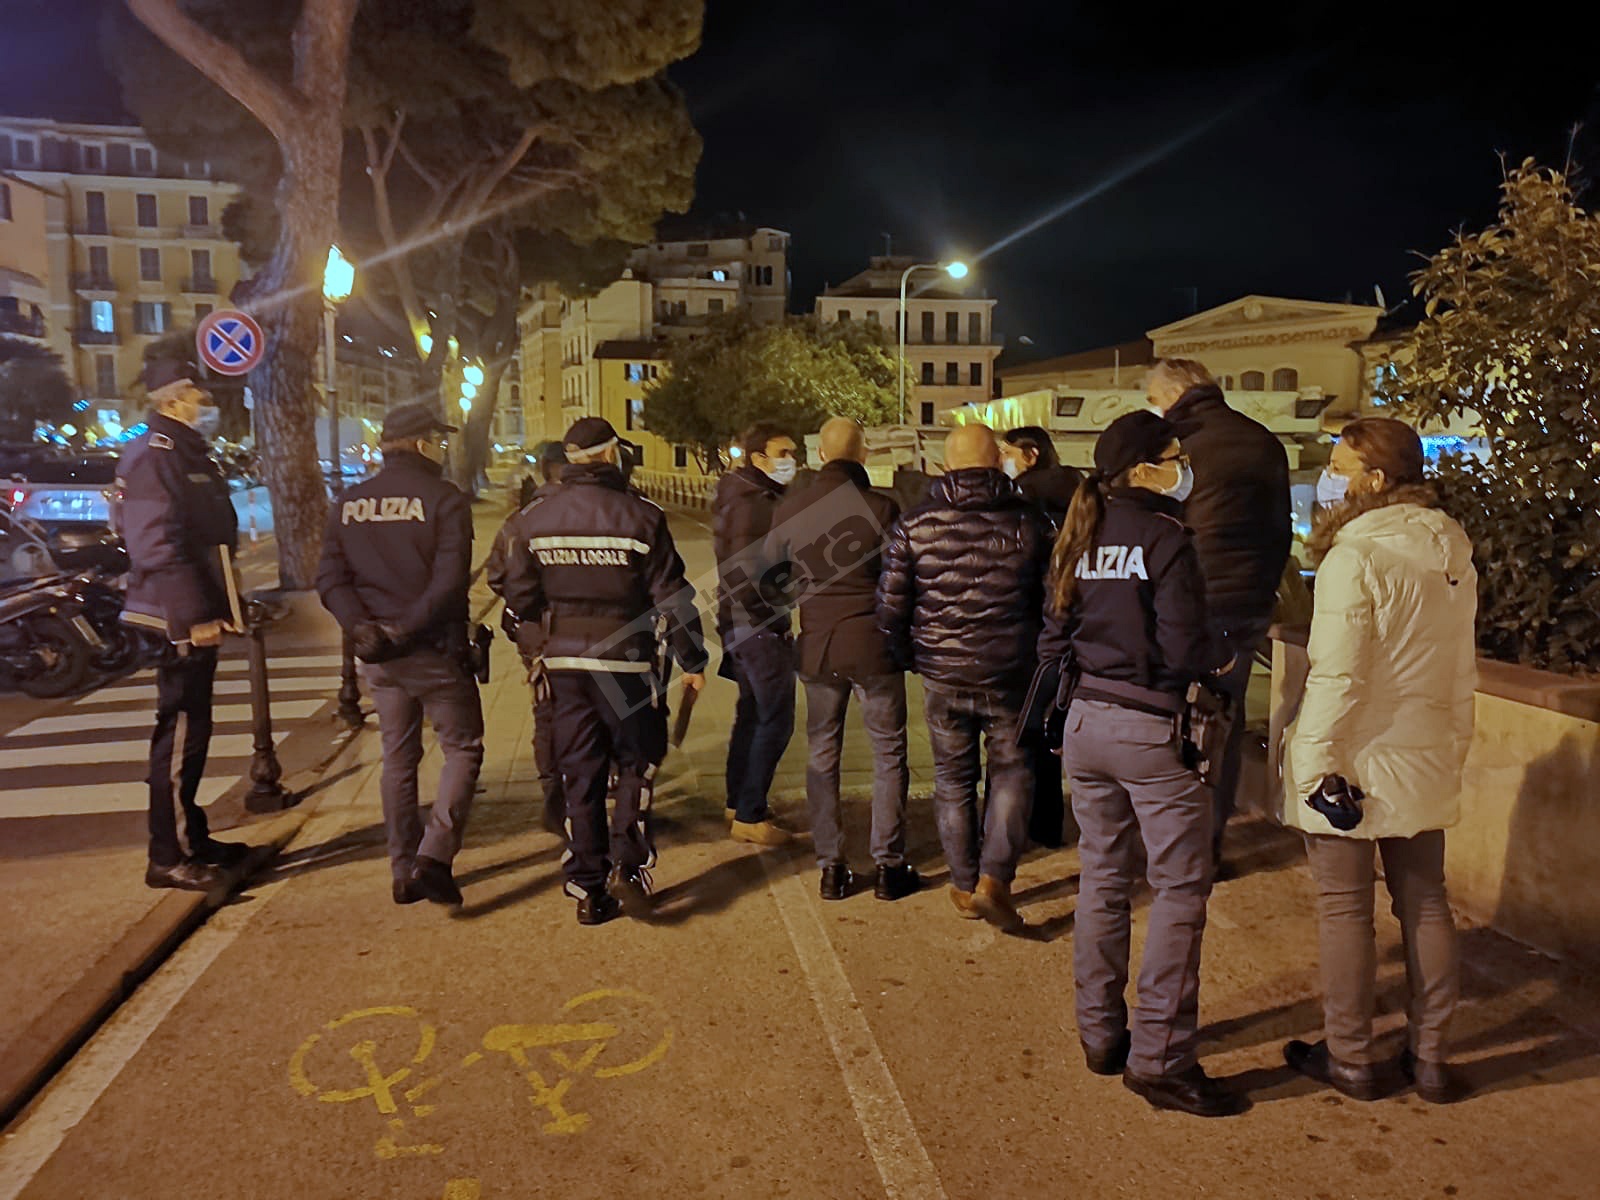 Ioapro Sanremo controlli foze dell'ordine notturna carabinieri polizia municipale polizia